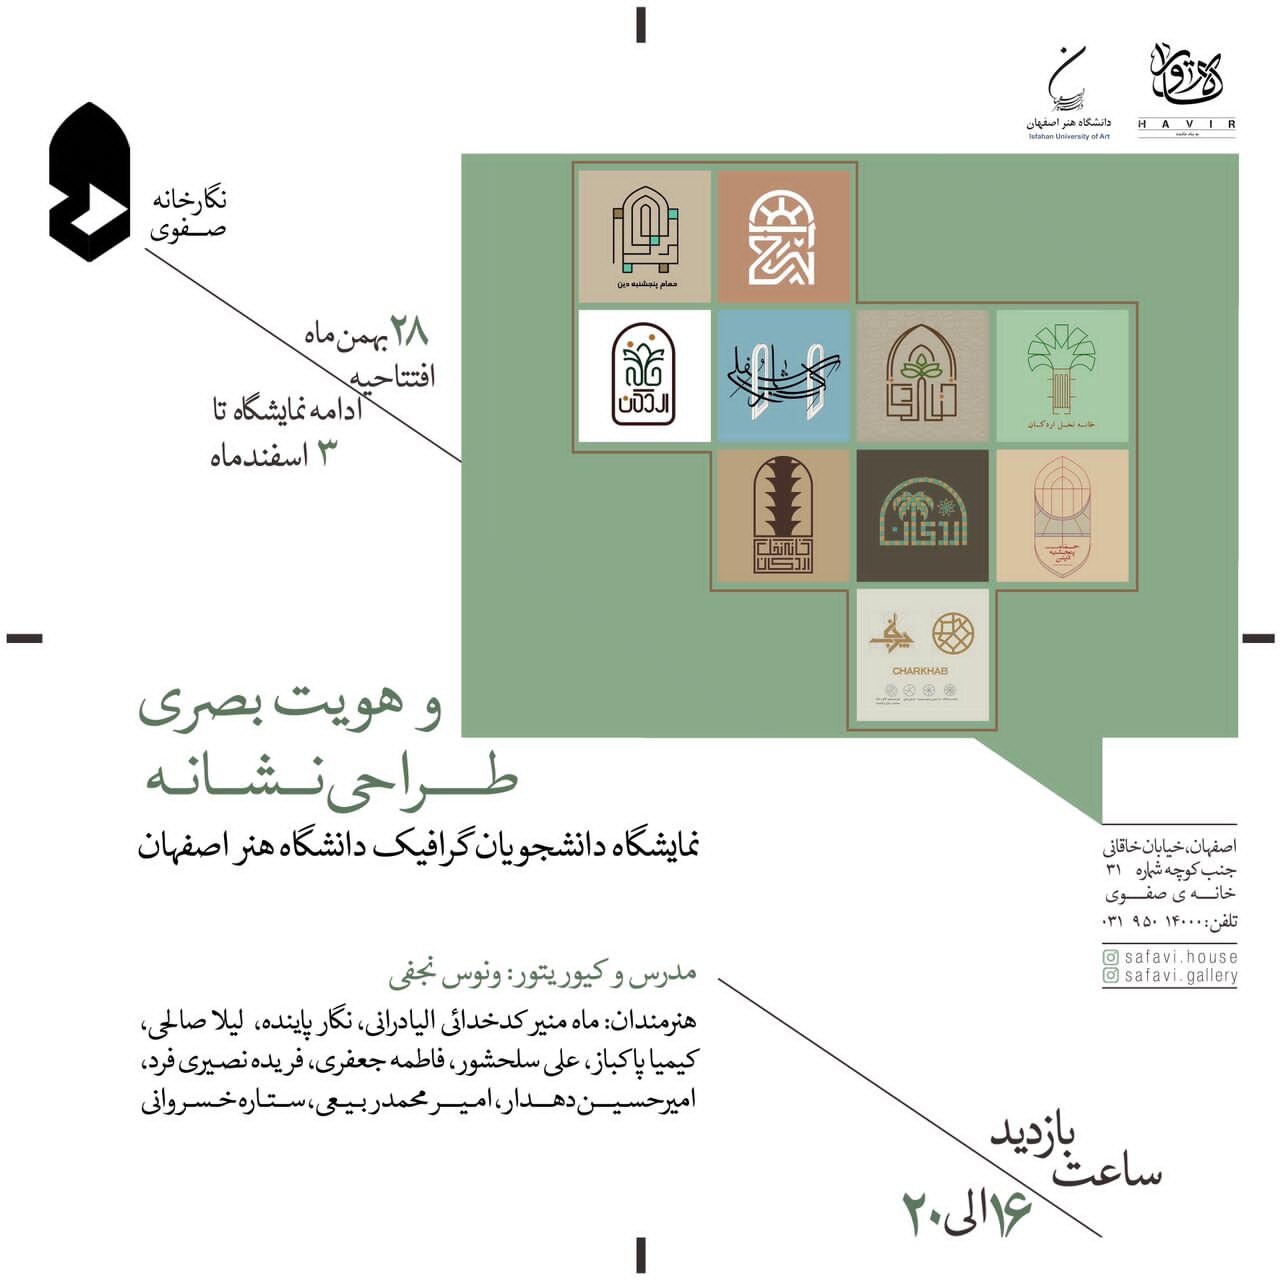 نمایشگاه «طراحی نشانه و هویت بصری» در نگارخانه صفوی